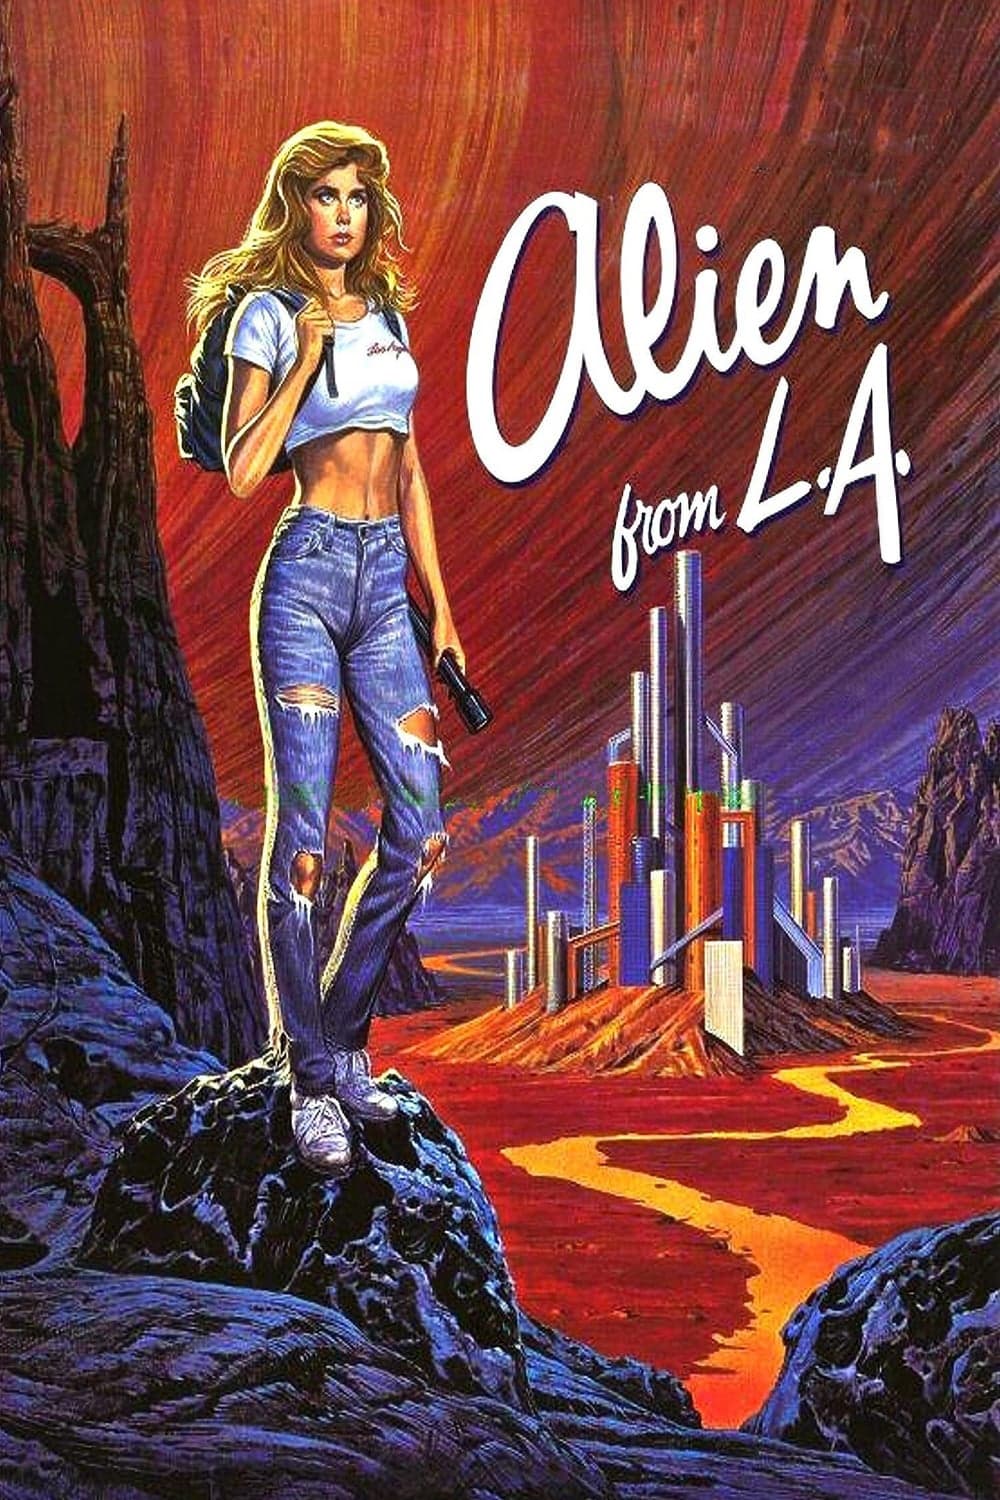 Alien from L.A. (1988)